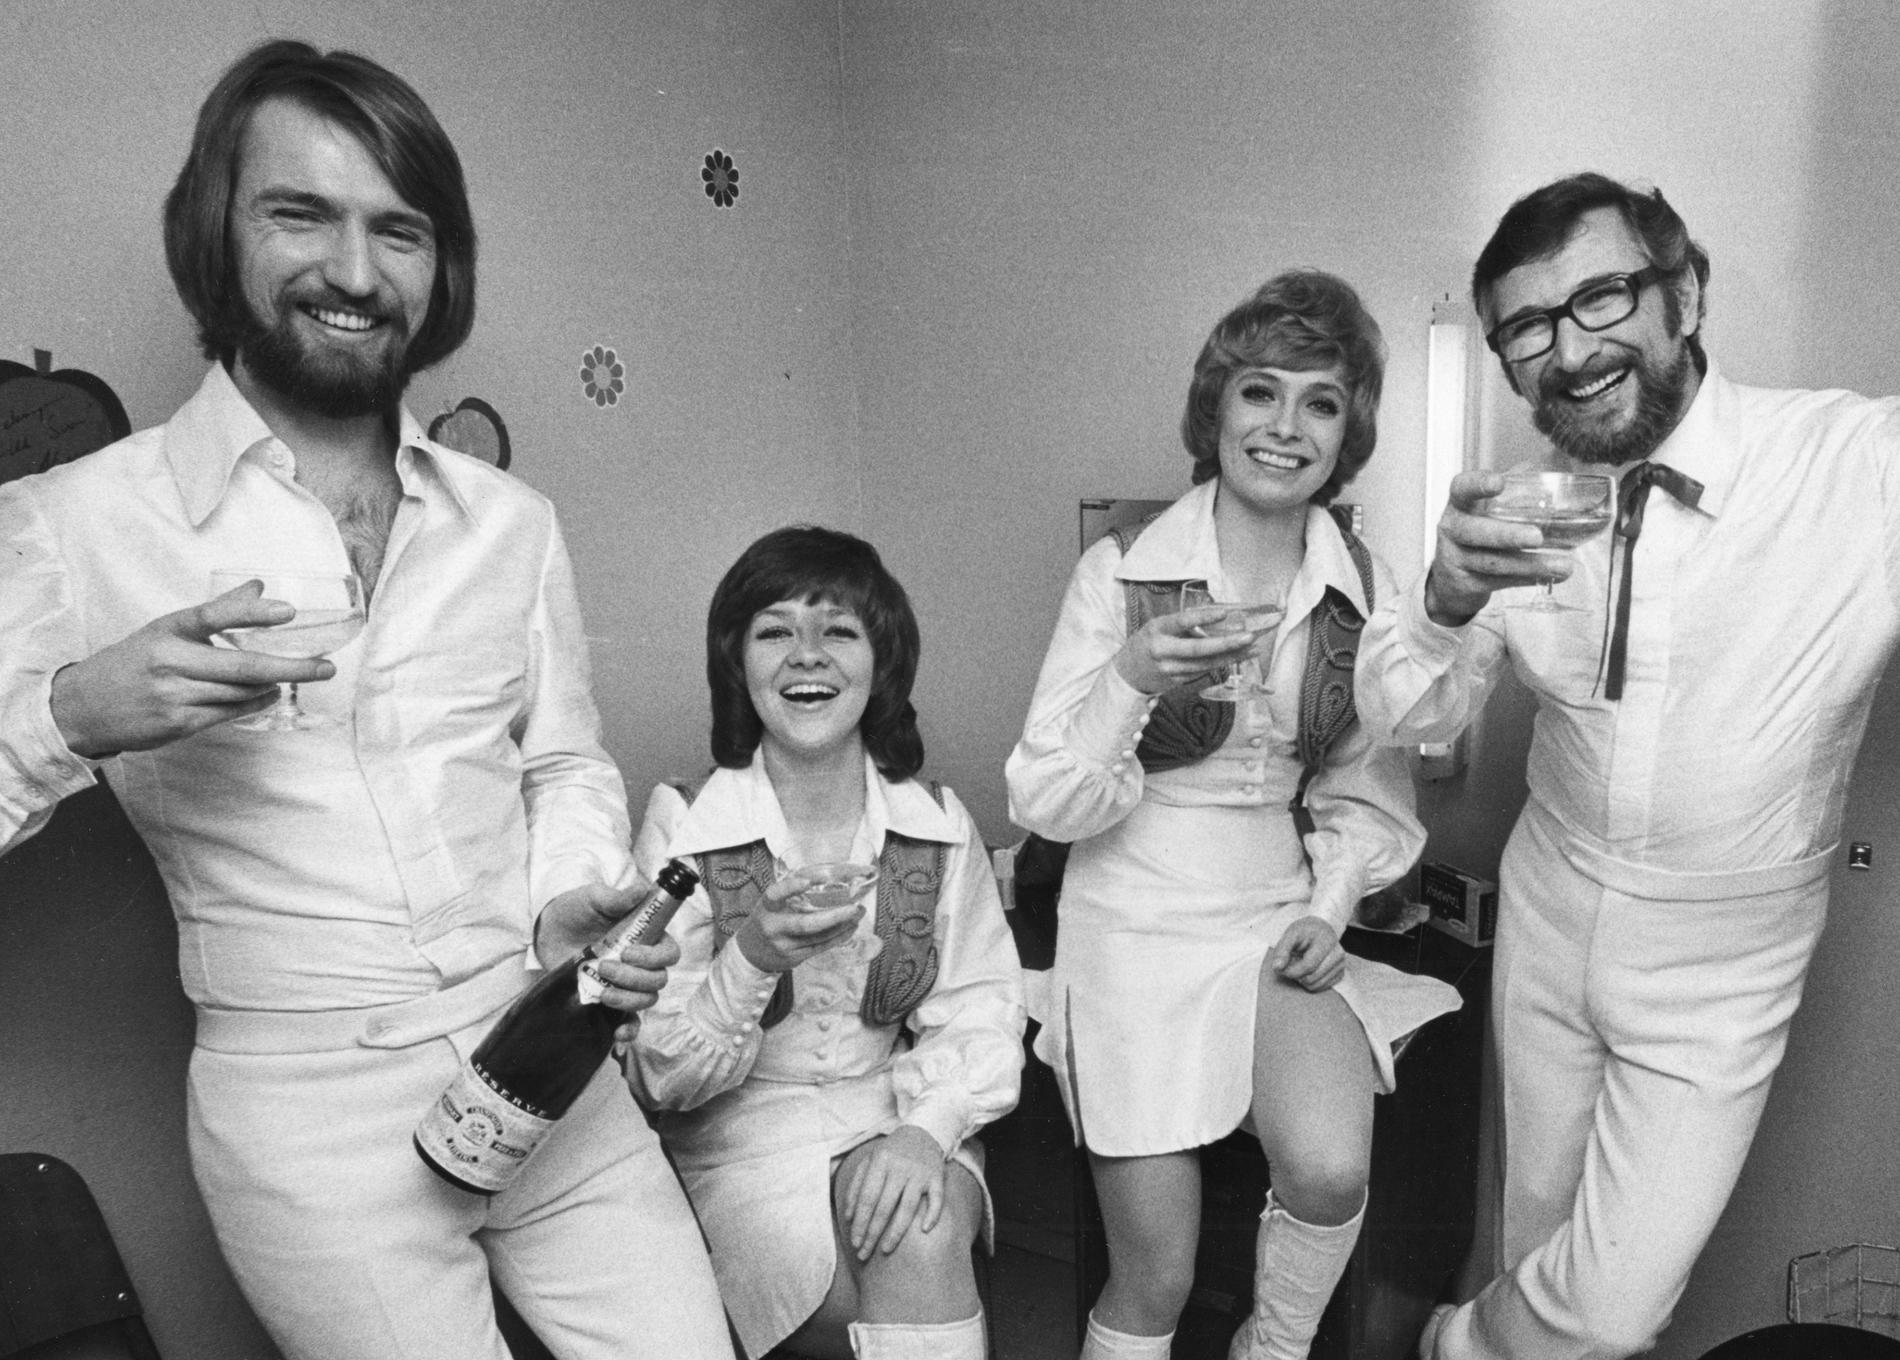 Medlemmarna i musikgruppen Family Four fr v: Pierre Isacsson, Agneta Munther, Marie Bergman och Berndt öst skålar i champagne efter att ha vunnit Melodifestivalen för andra året i rad med melodin "Härliga sommardag" 1972.